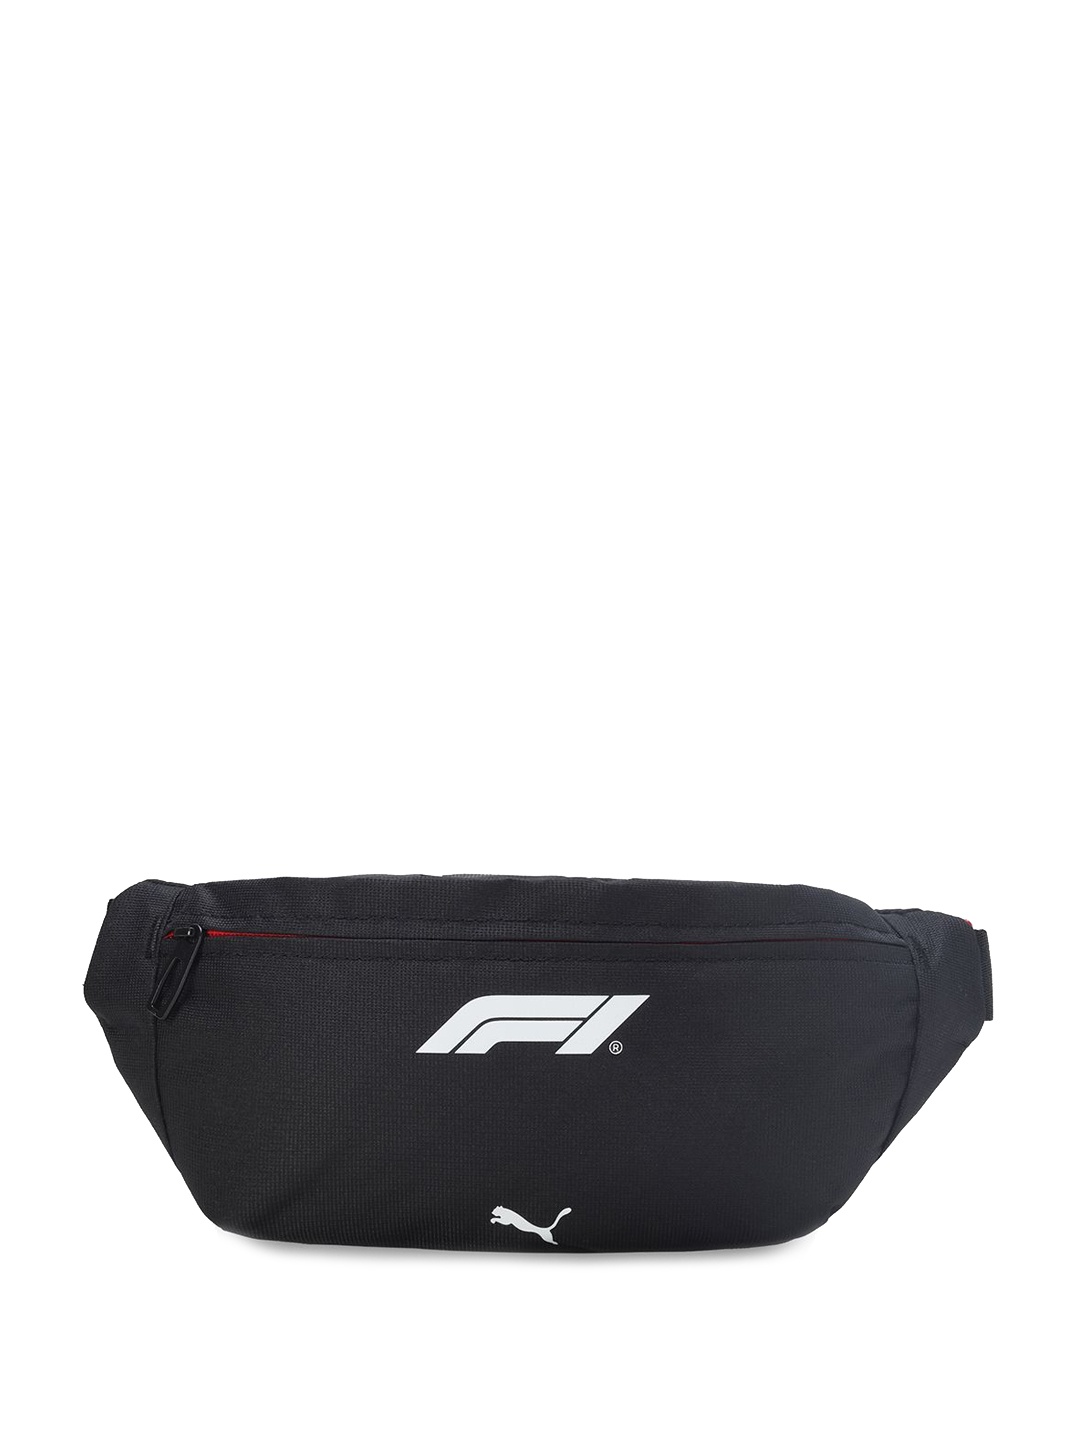 

PUMA Motorsport F1 Unisex Waist Bag, Black